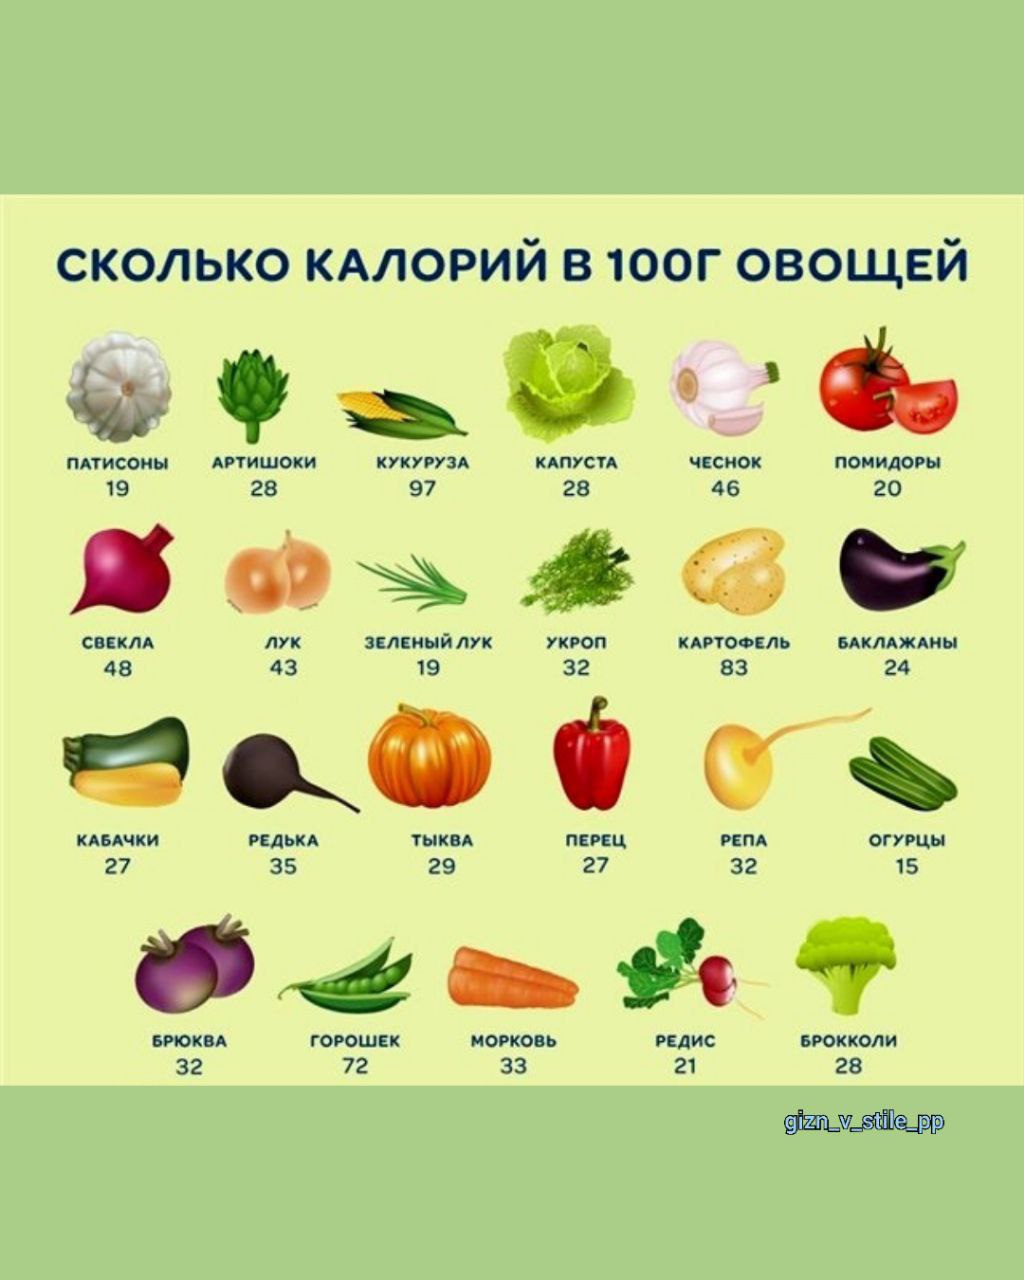 Калорийность свежих овощей